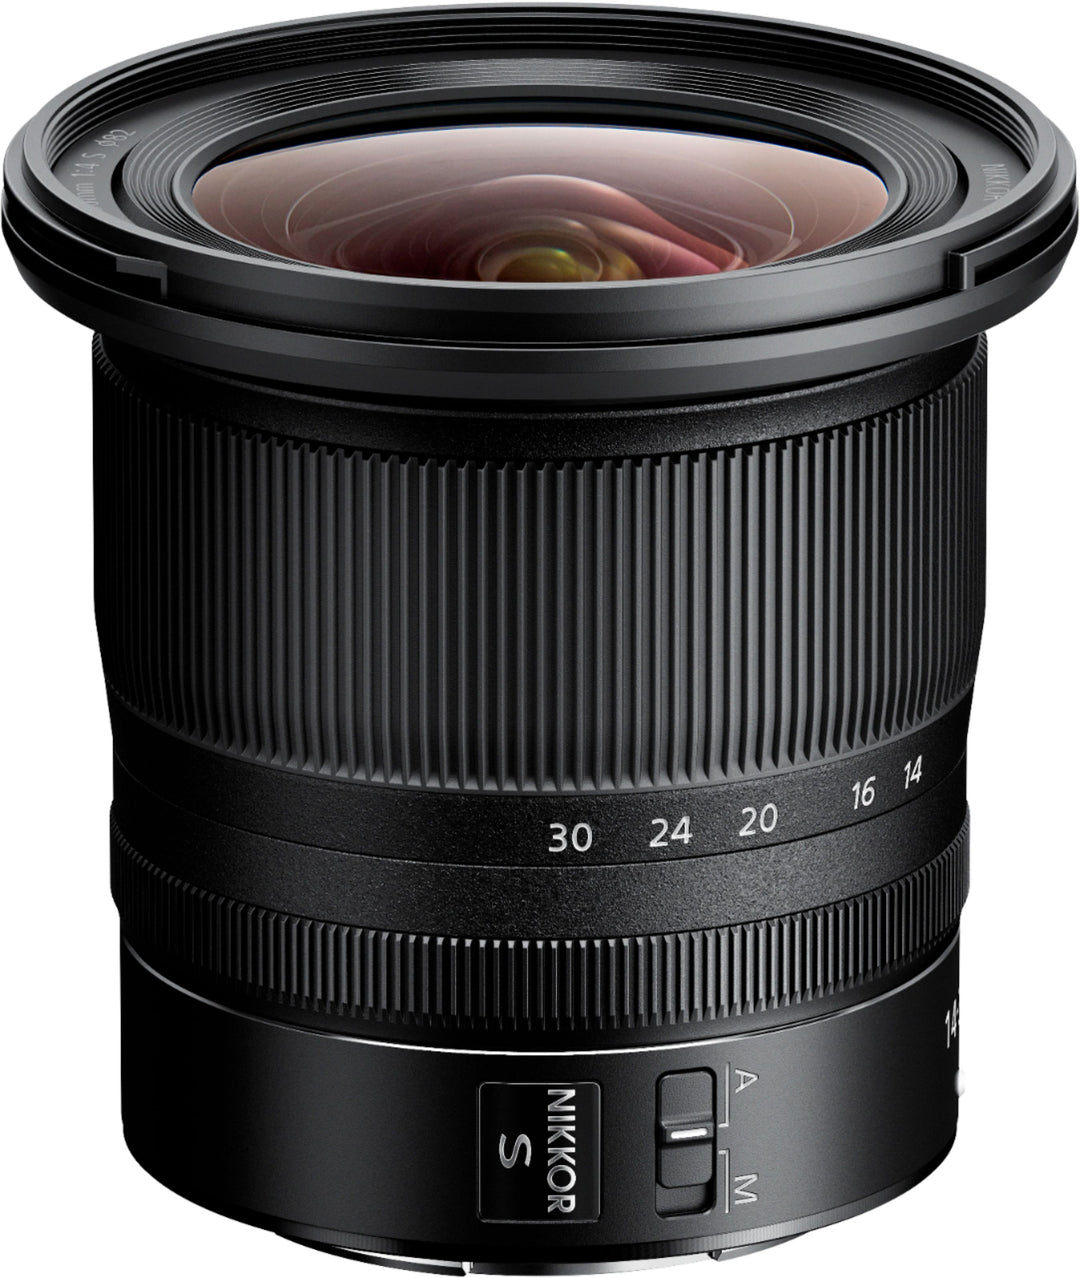 NIKKOR Z 14-30mm f/4.0 S Zoom Lens for Nikon Z Cameras - Black_1